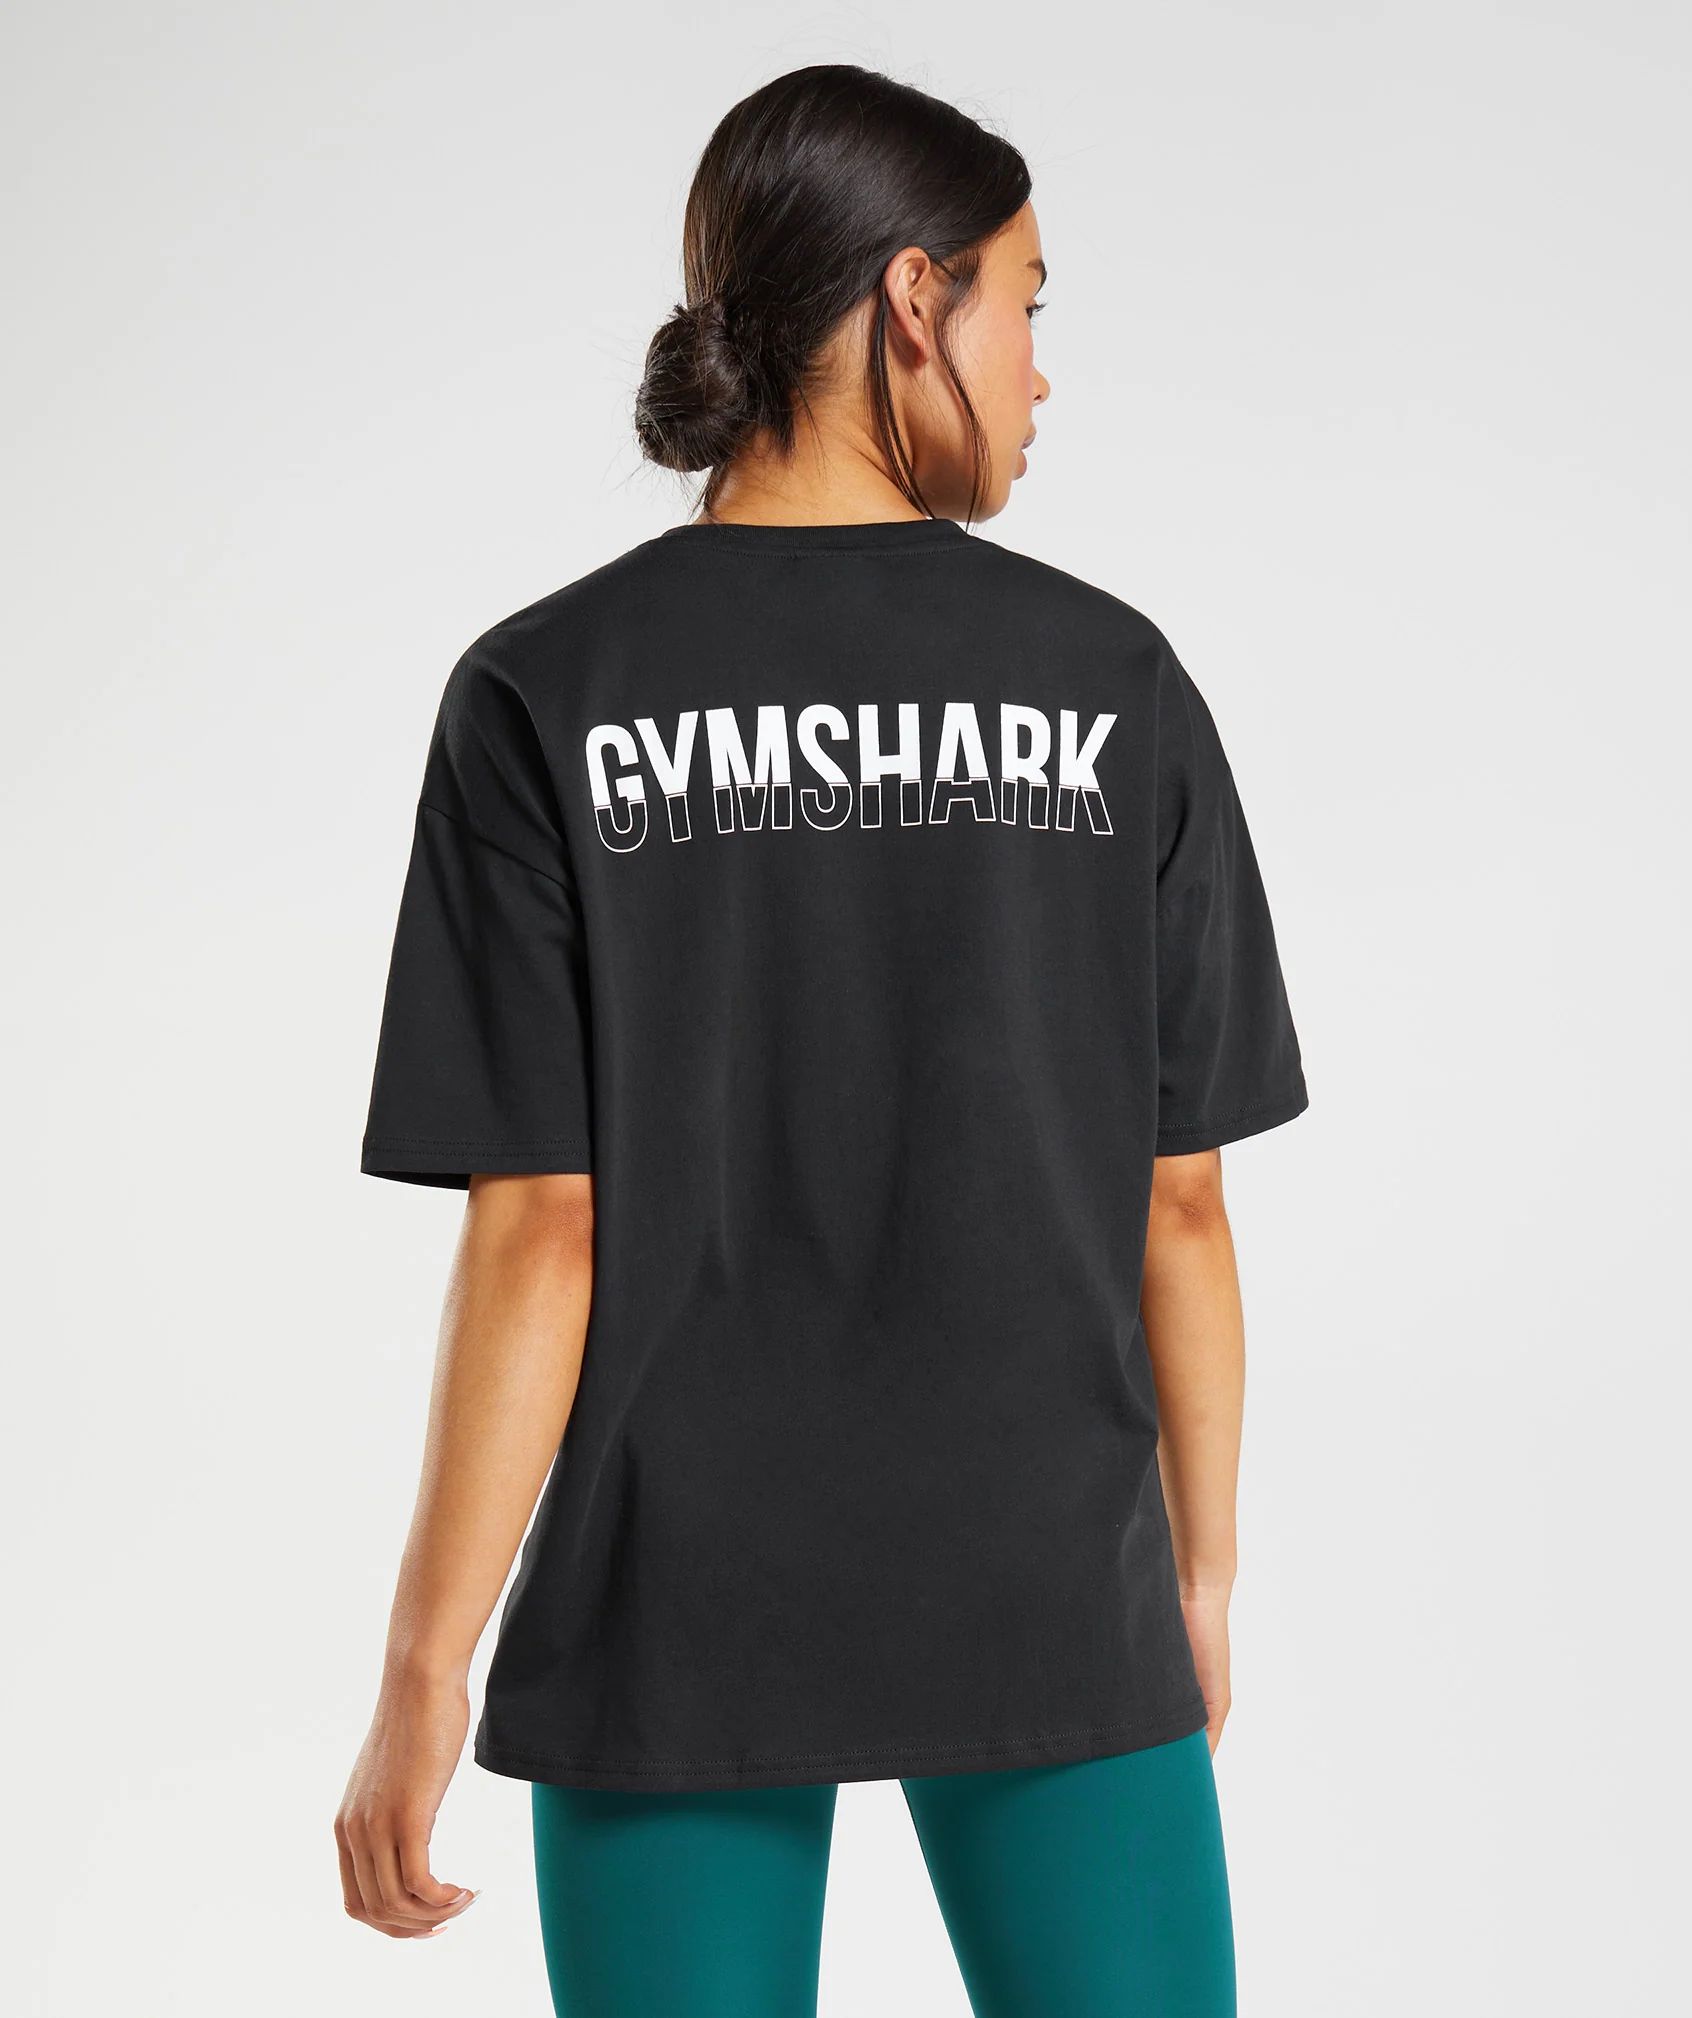 Gymshark Fraction Oversized T-Shirt - Black/White | Gymshark (Global)